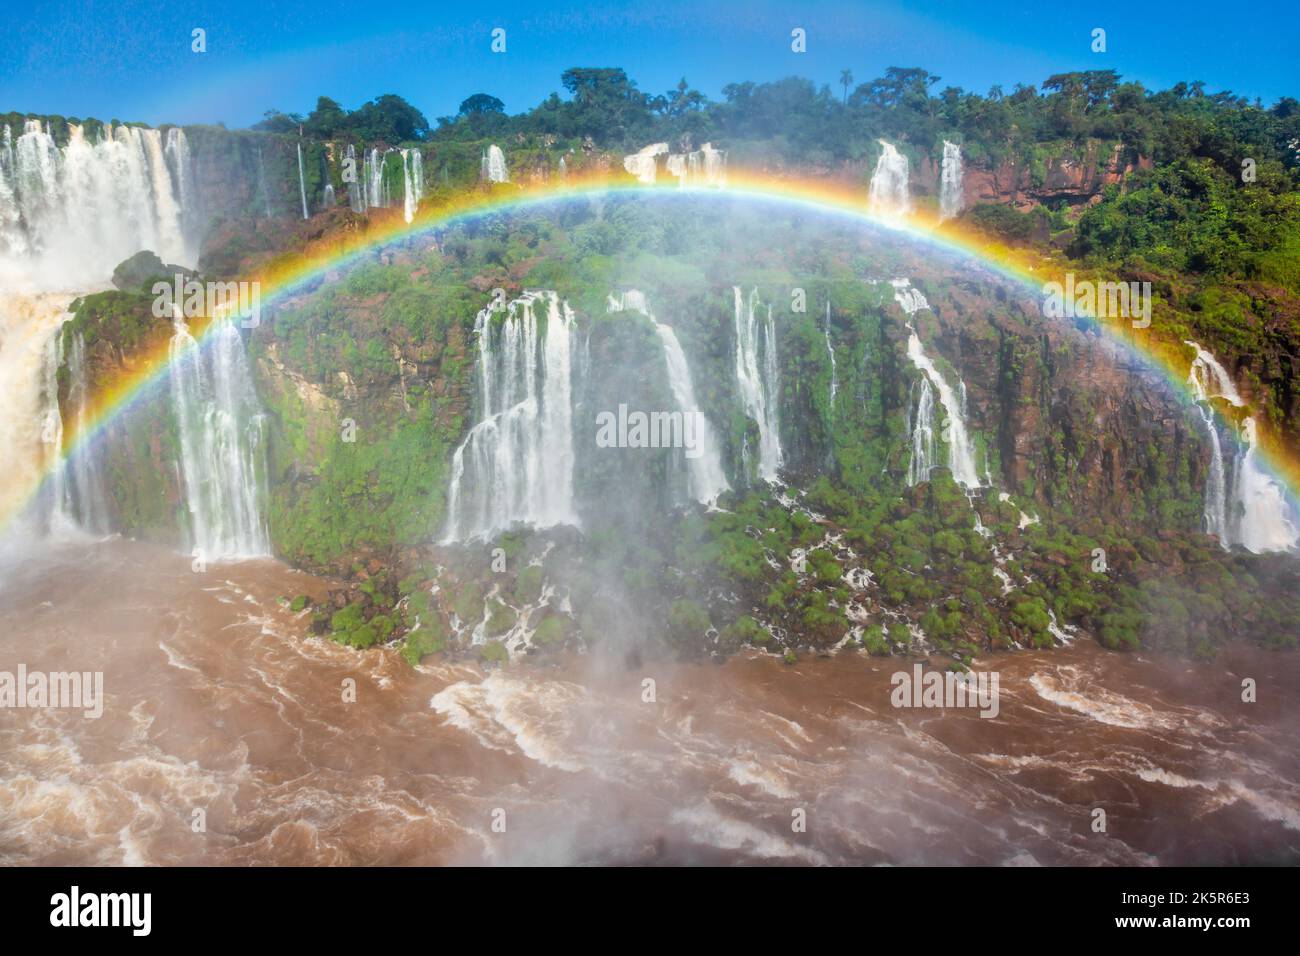 Cascate di Iguazu suggestivo paesaggio con arcobaleno, vista dal lato argentino Foto Stock